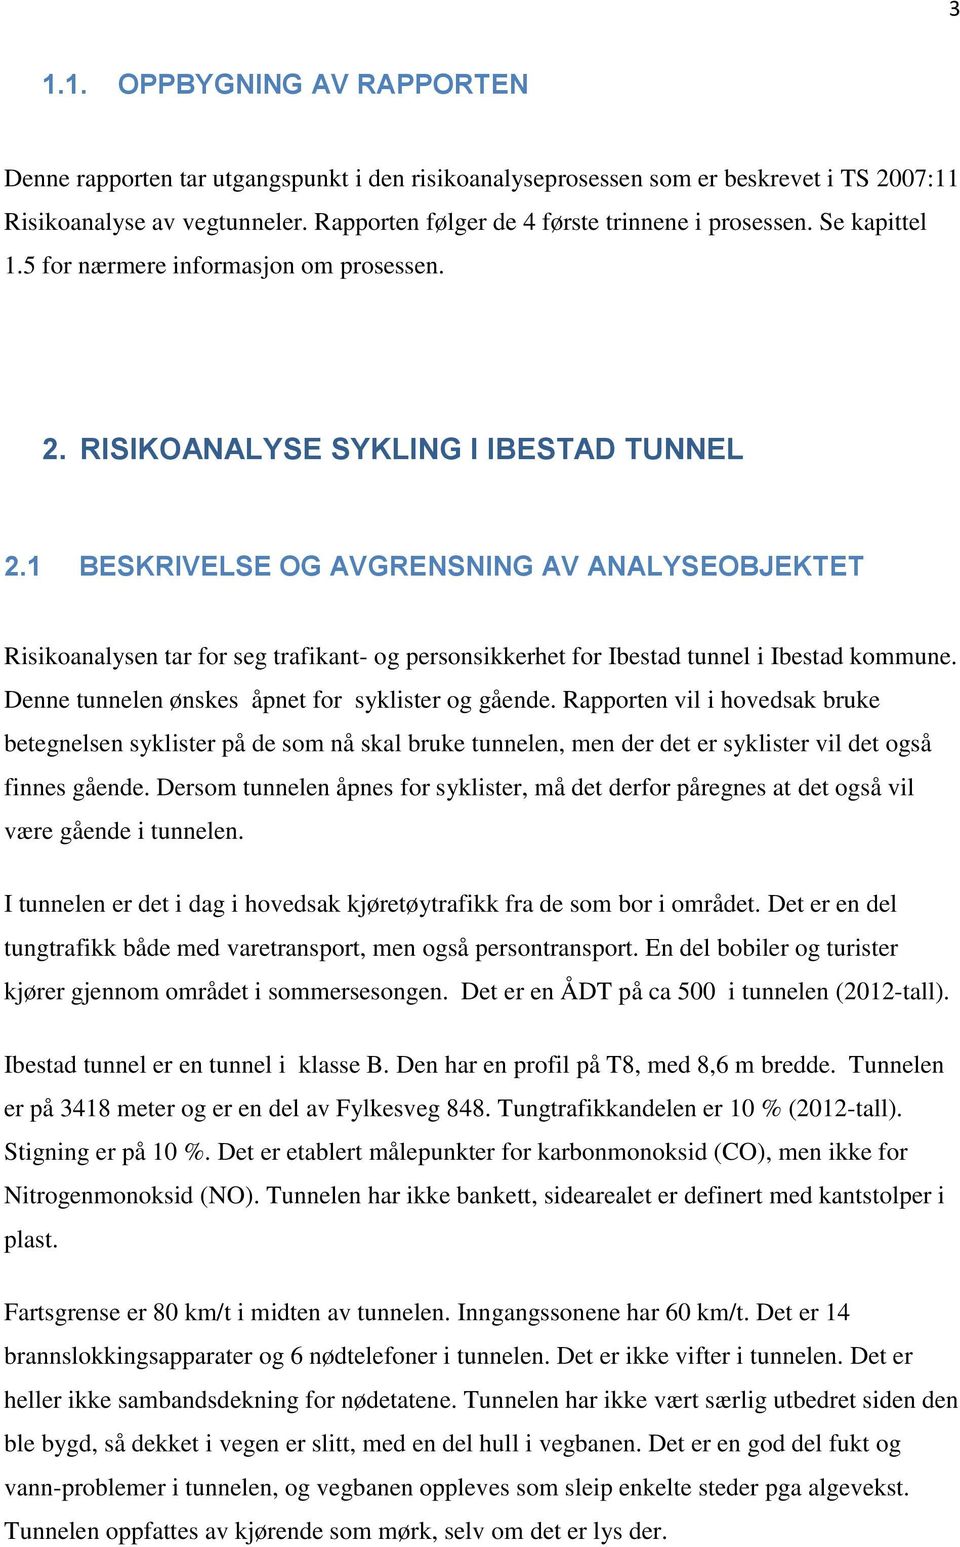 1 BESKRIVEE OG AVGRENSNING AV ANALYSEOBJEKTET Risikoanalysen tar for seg trafikant- og personsikkerhet for Ibestad tunnel i Ibestad kommune. enne tunnelen ønskes åpnet for syklister og gående.